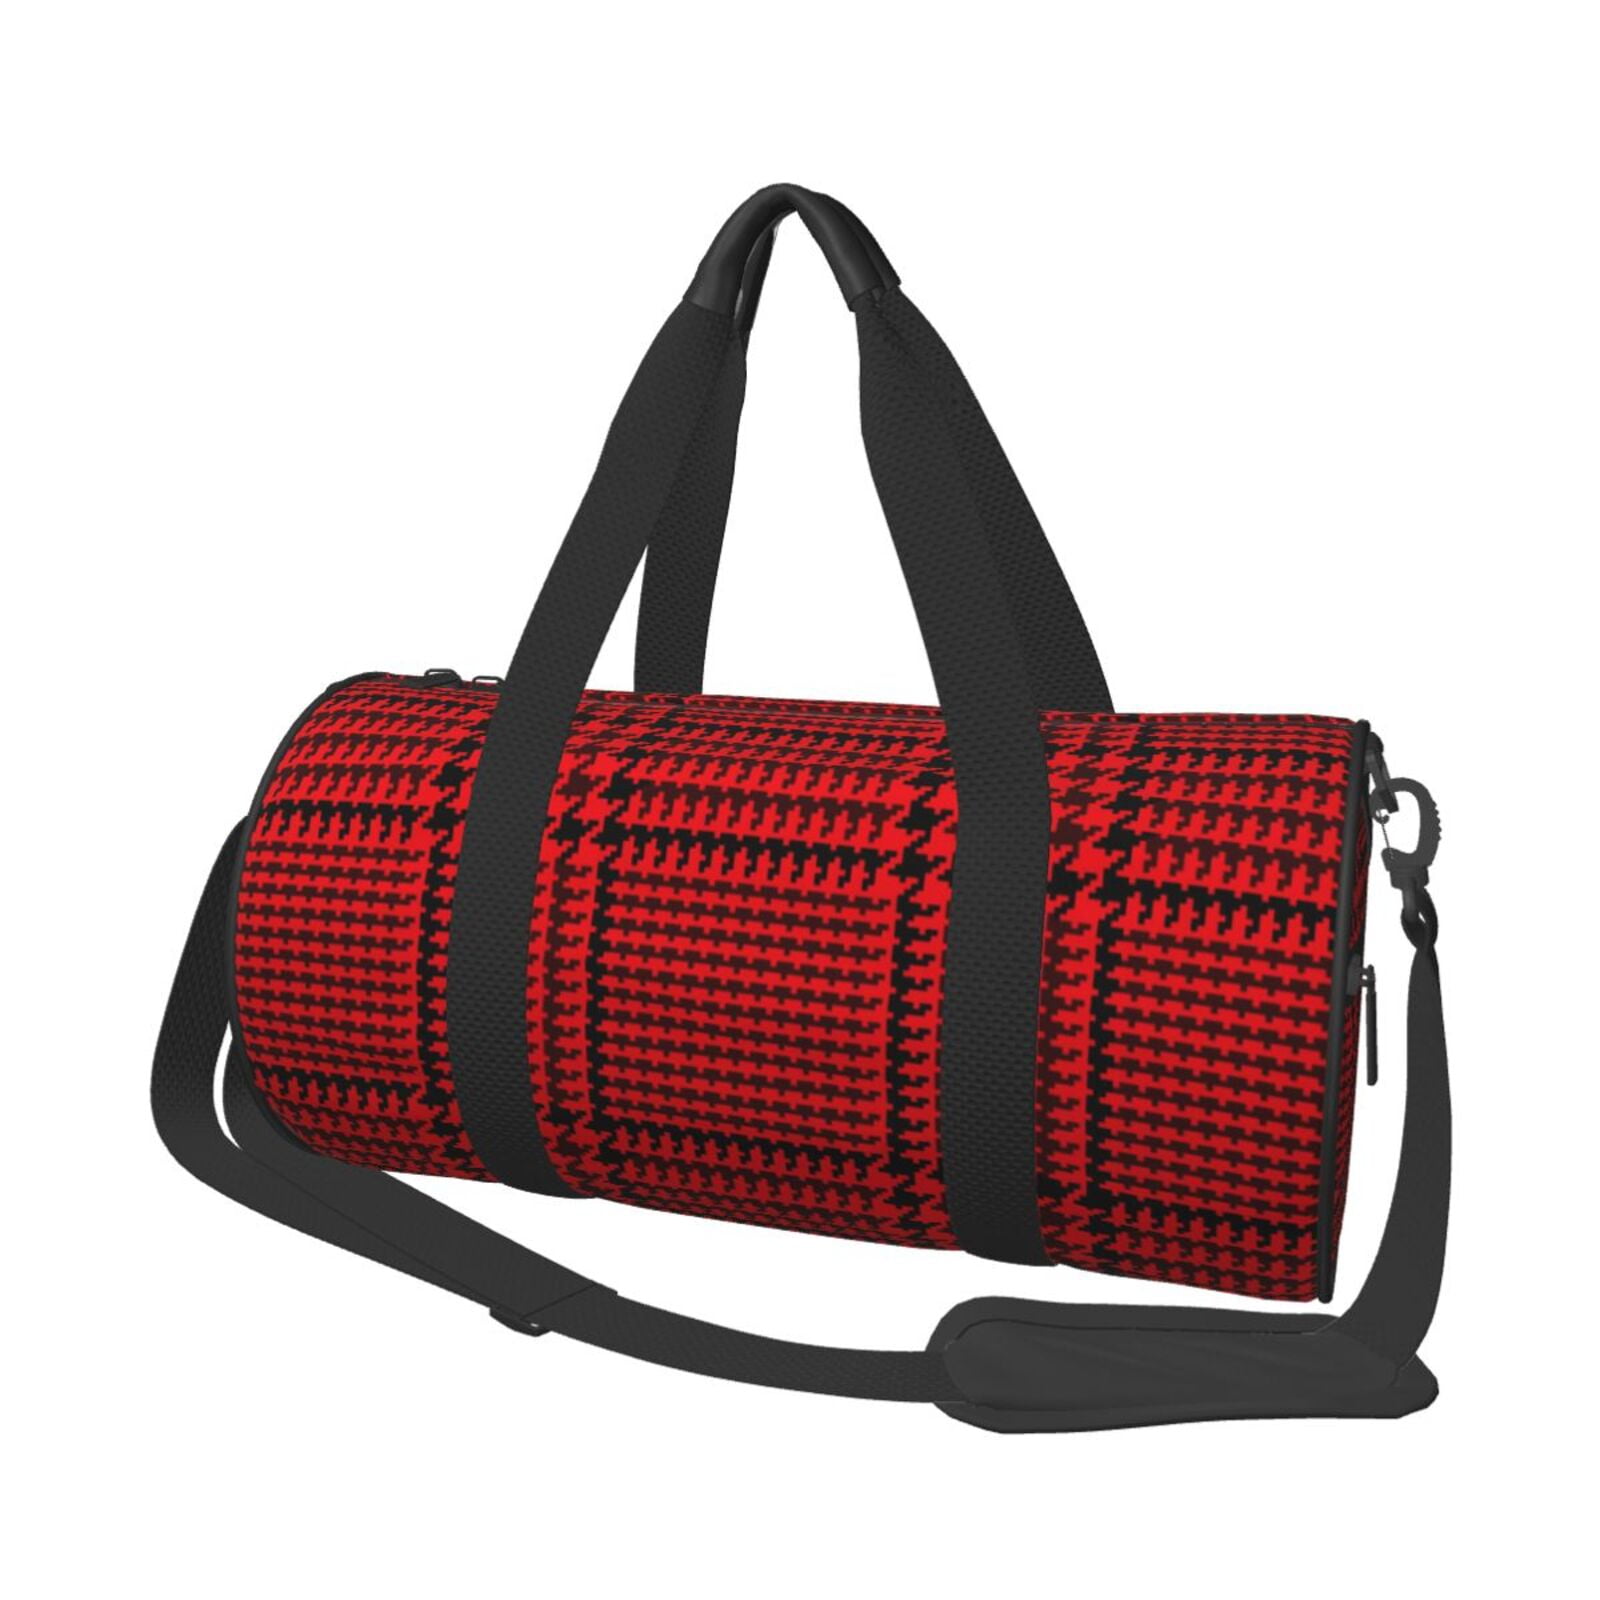 Coaee Red Black Houndstooth Large Capacity Travel Luggage Bag Cylinder ...